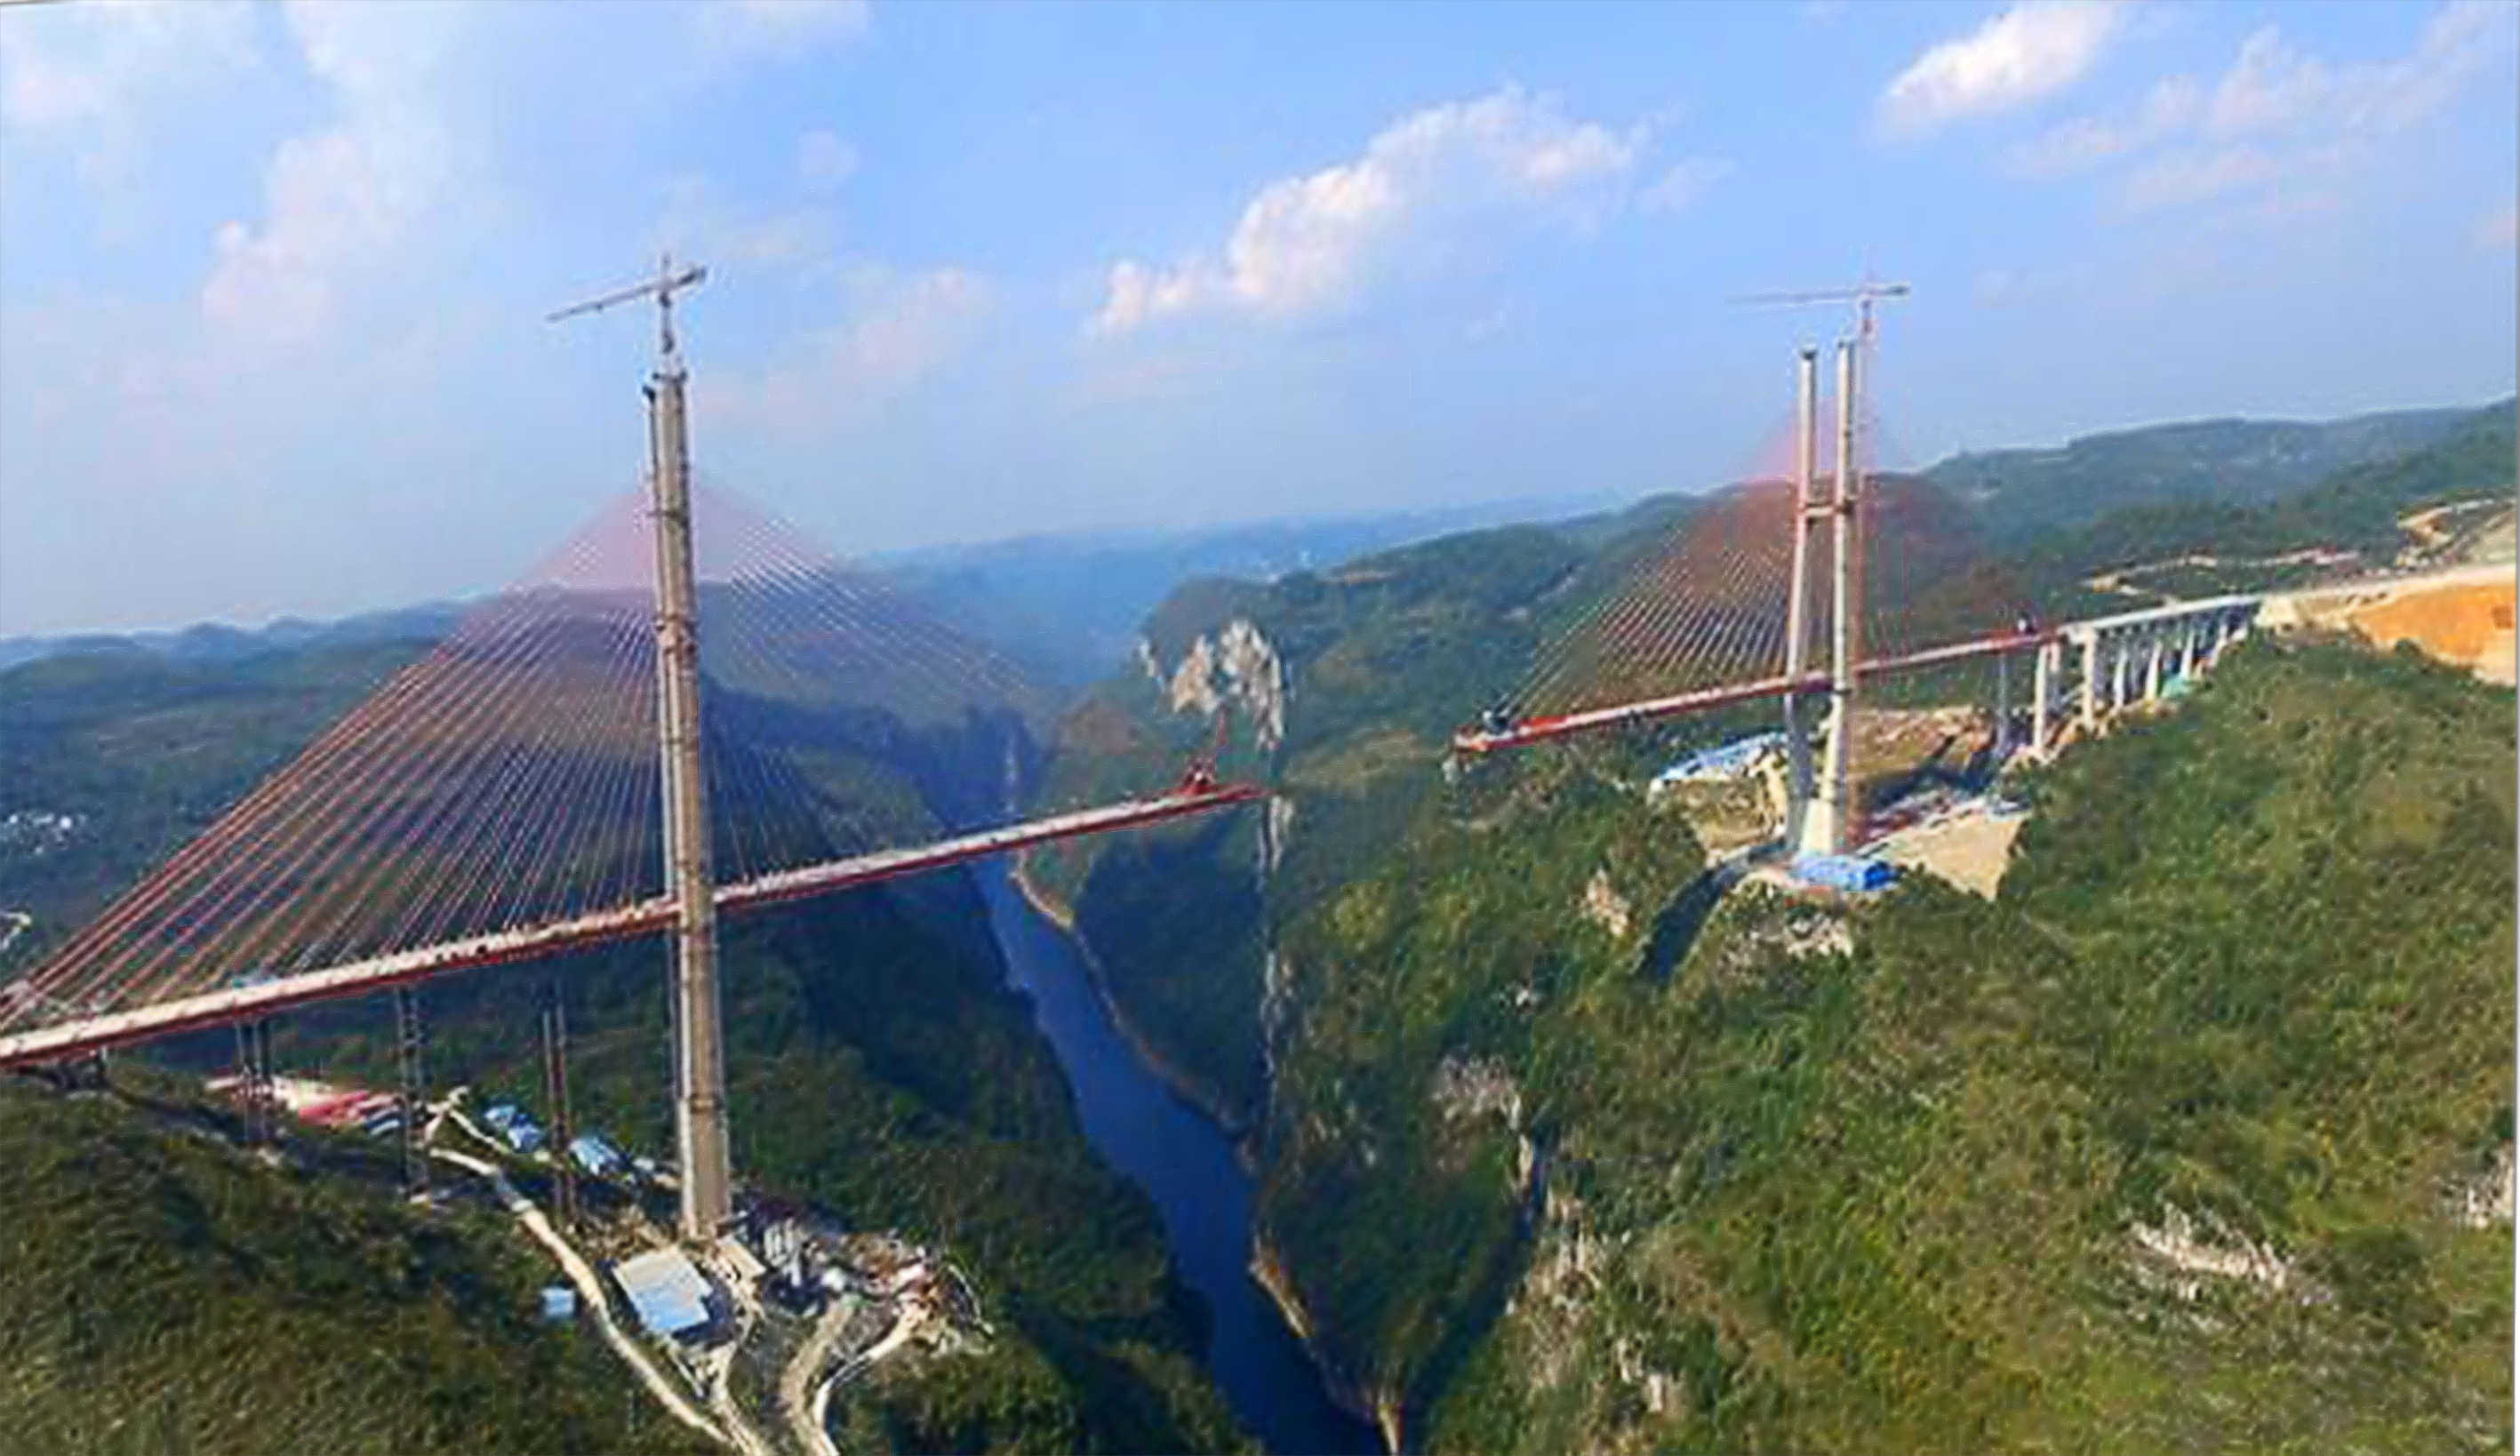 “数”说贵州桥｜22年前，这座桥打破世界纪录 - 当代先锋网 - 贵州